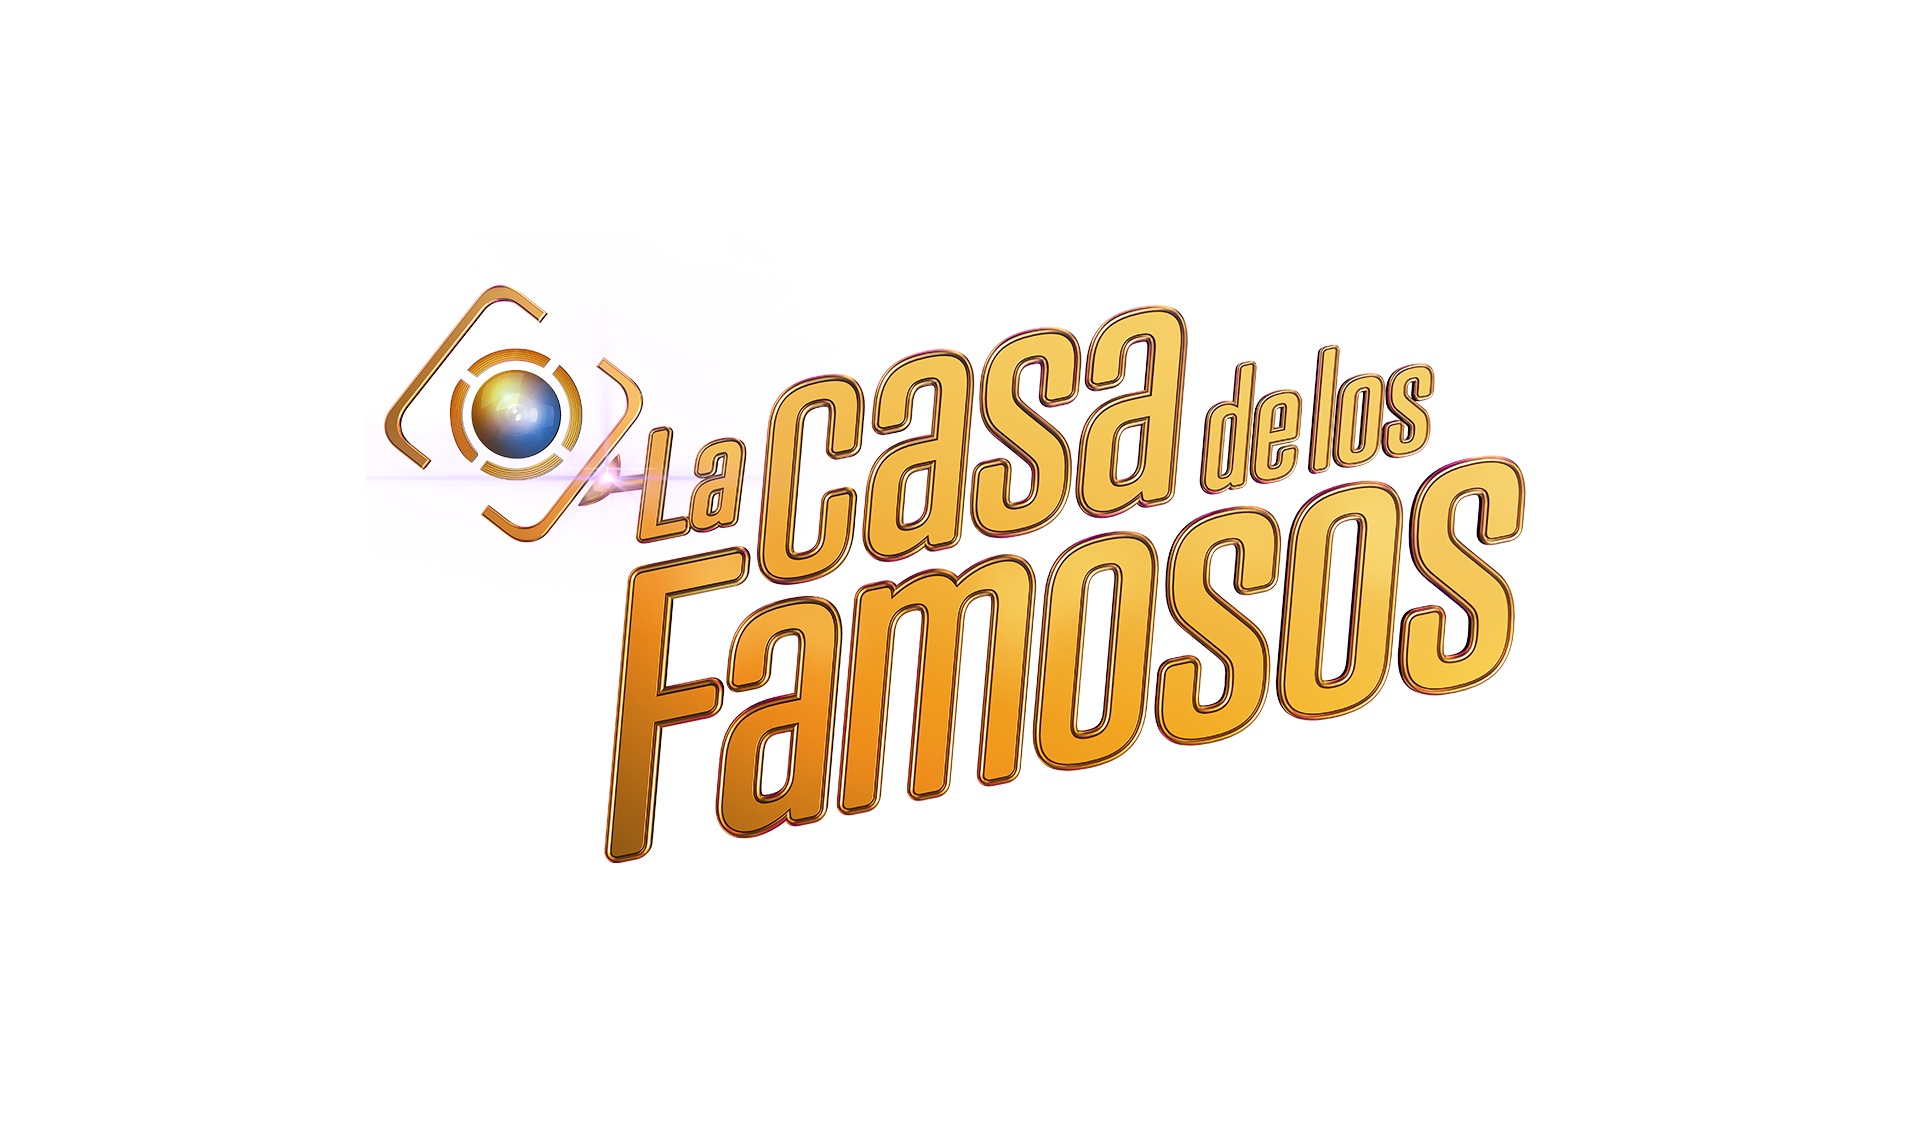 Telemundo Internacional Presents ‘La Casa de los Famosos’ S2 In June